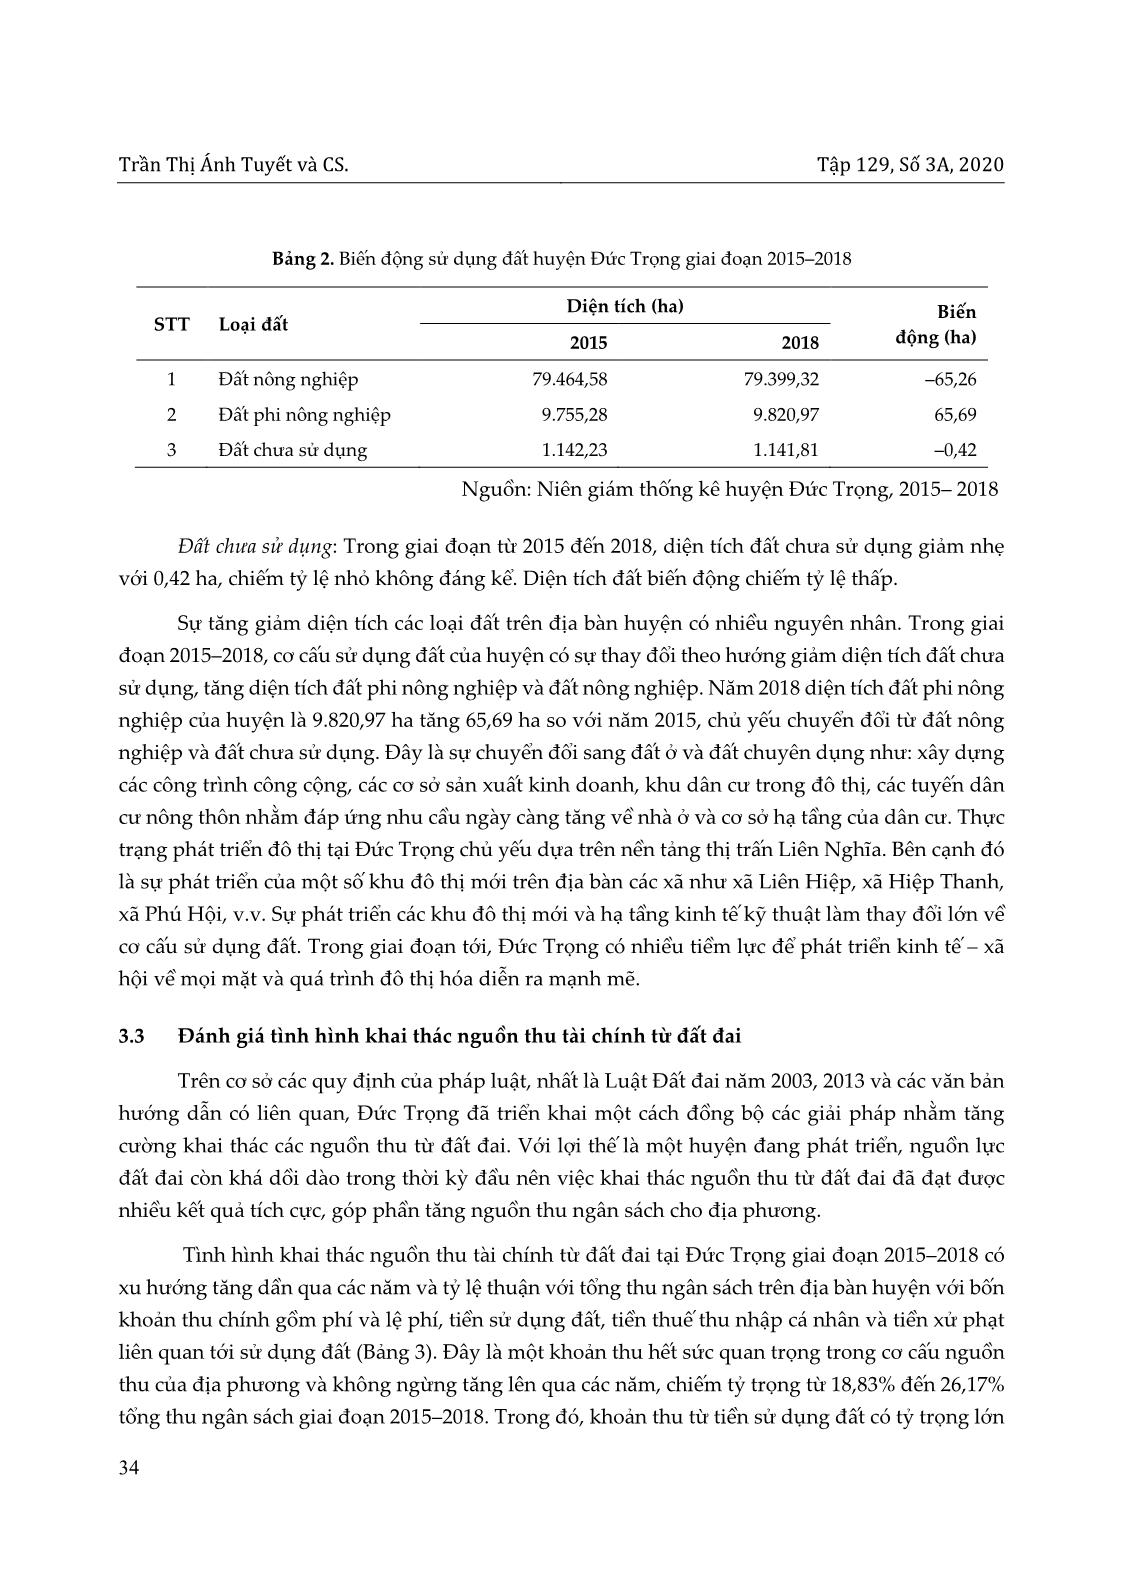 Tình hình khai thác nguồn thu tài chính từ đất đai tại huyện Đức Trọng, tỉnh Lâm Đồng trang 4